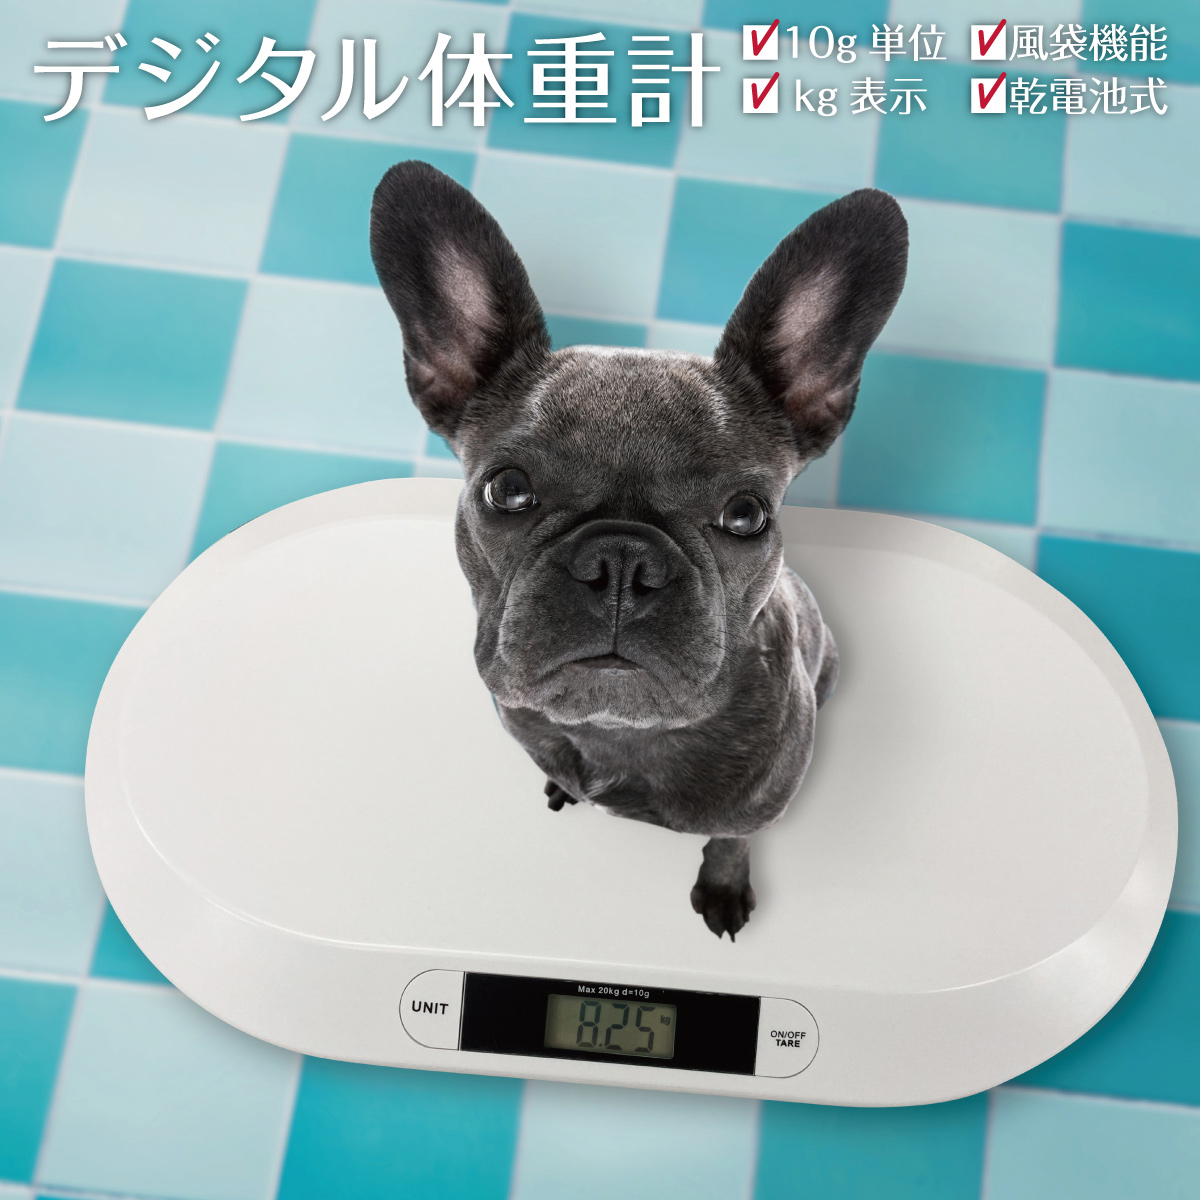 ペット体重計 犬 猫 ペットスケール ペットくん ペット用体重計 デジタル 5g単位 猫体重計 犬体重計 うさぎ